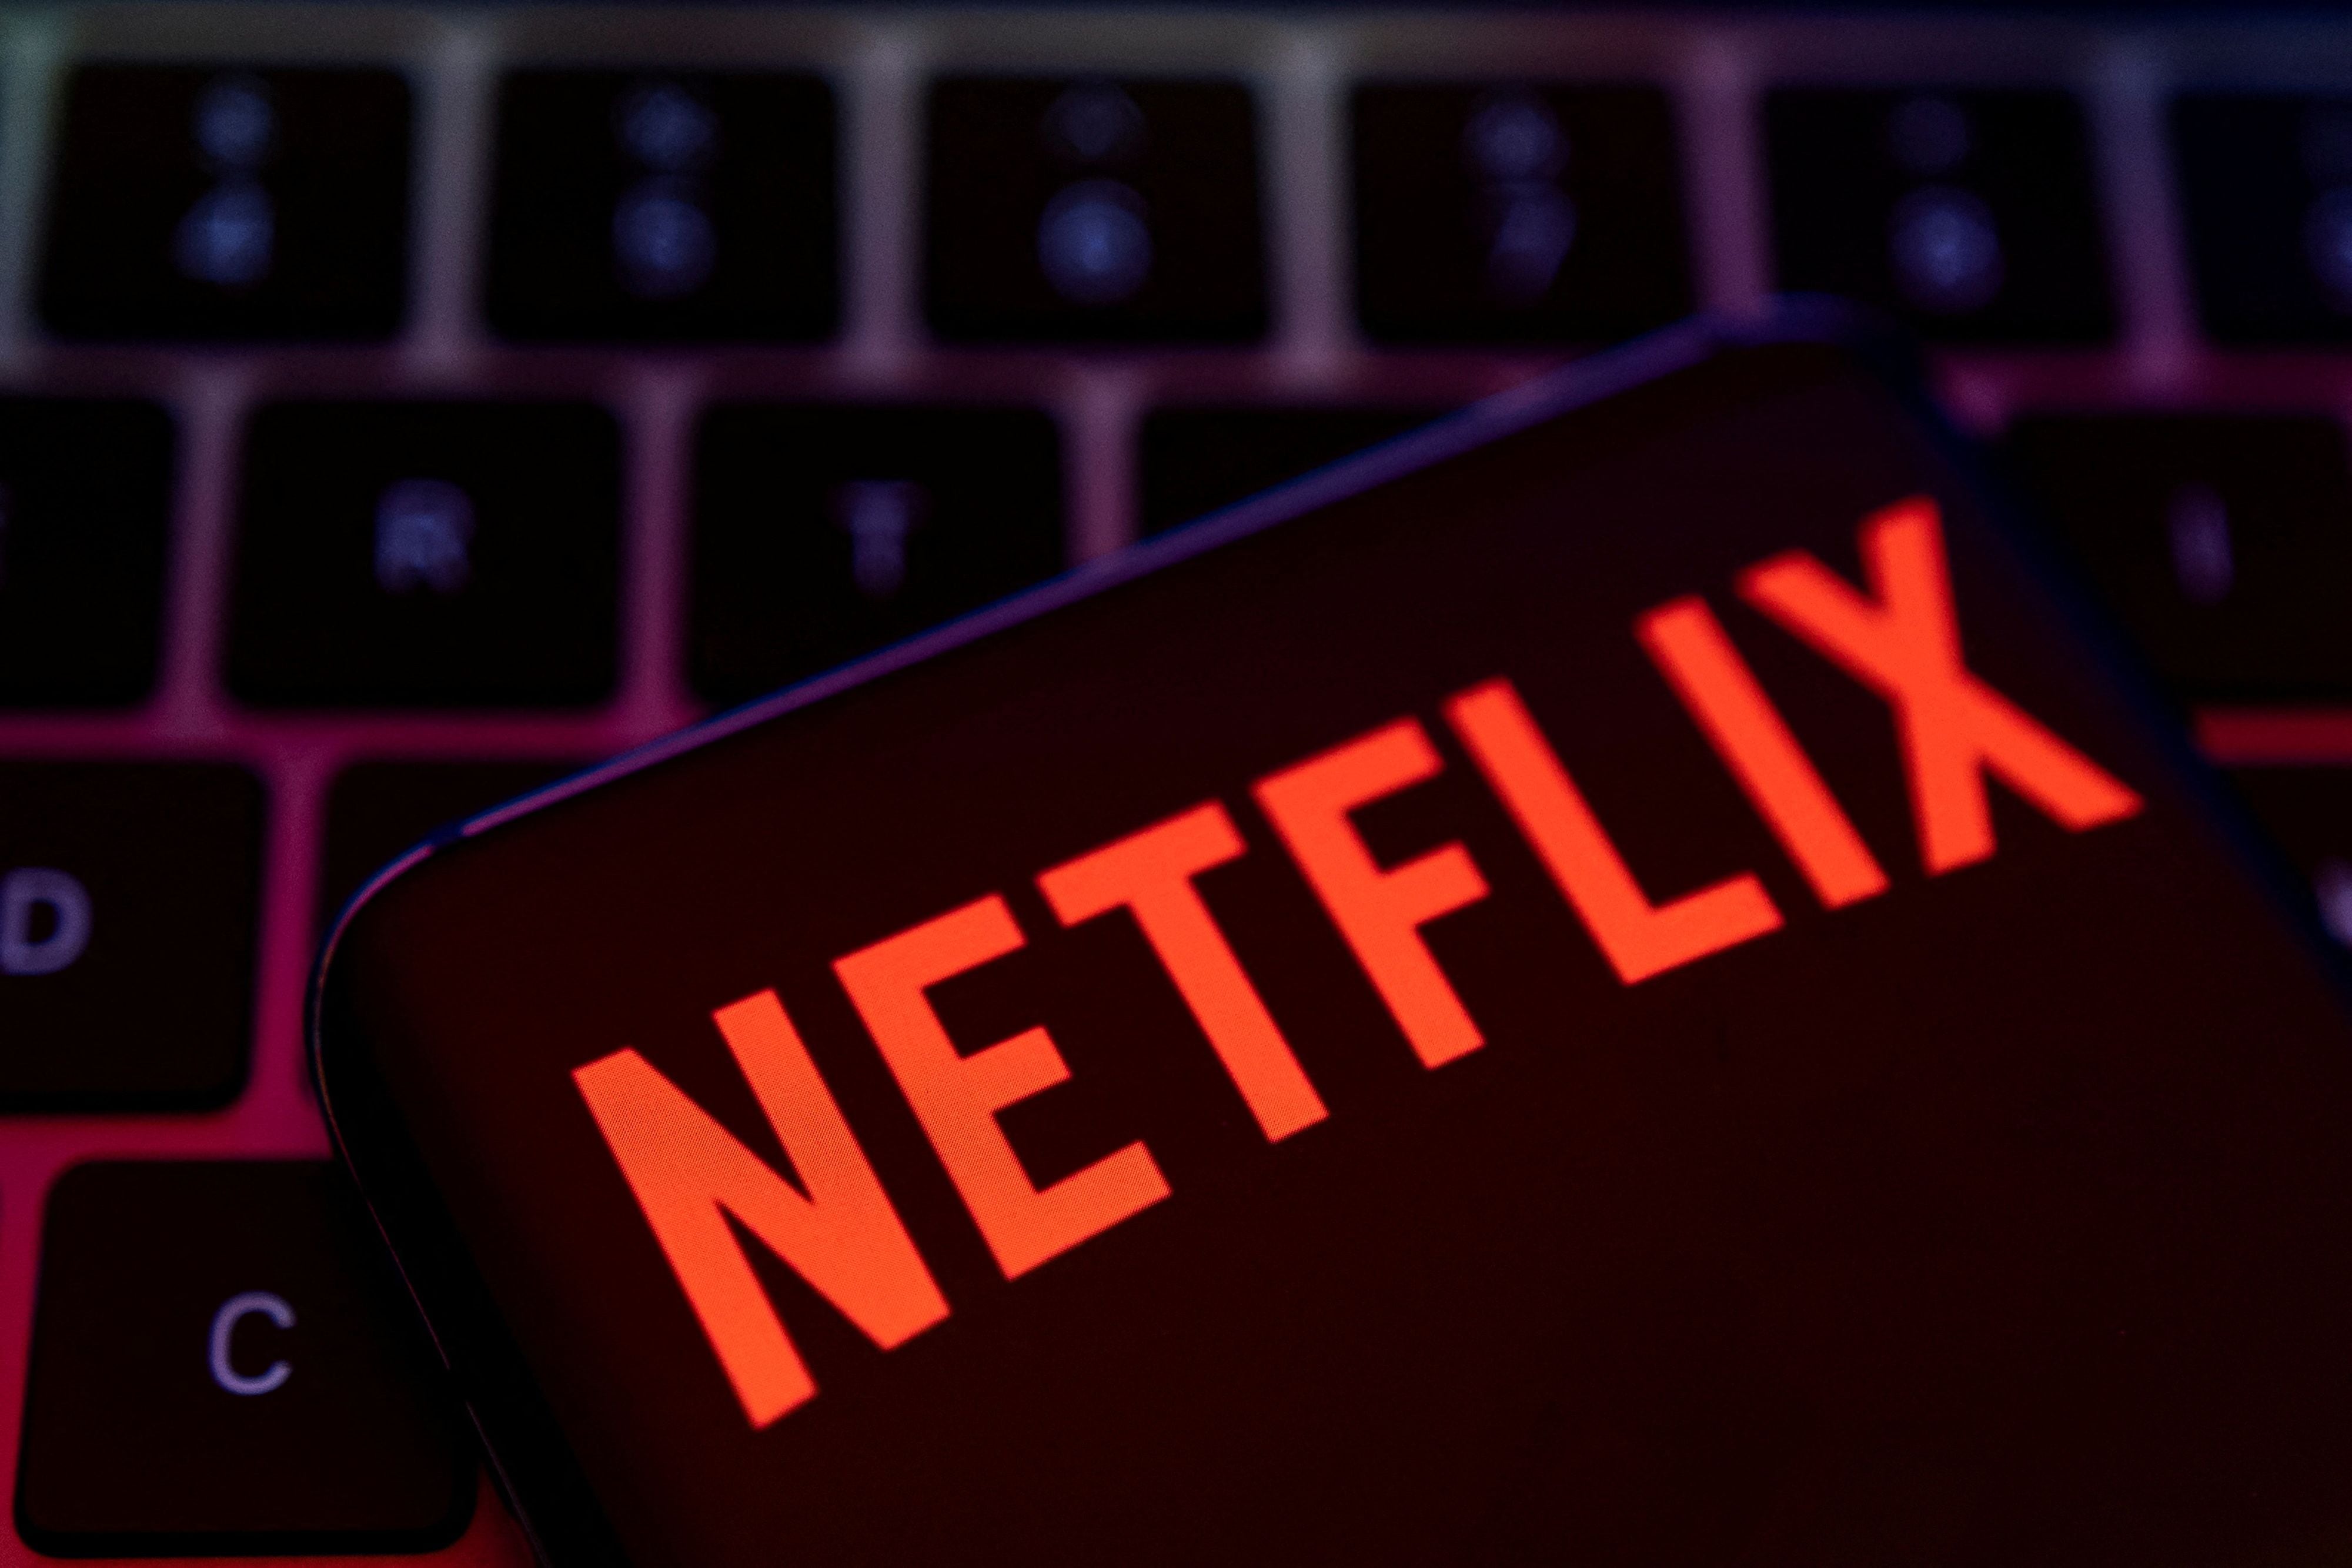 Netflix aspira a una mezcla equilibrada de contenido original y licenciado, según su CFO, Spence Neumann. (REUTERS/Dado Ruvic)